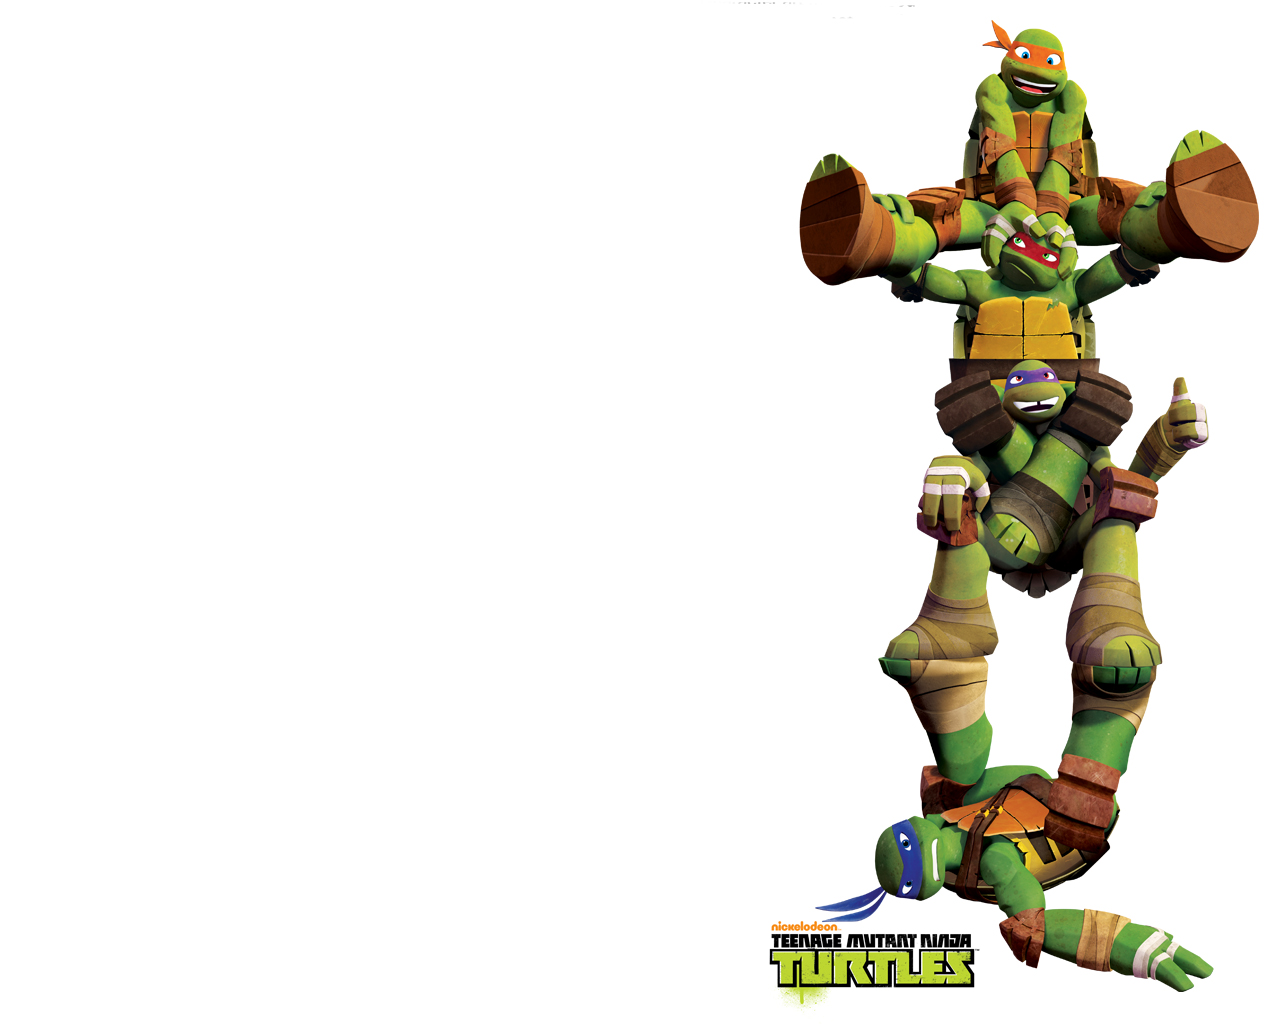 Teenage Mutant Ninja Turtles Puter Desktop Wallpaper Jpg